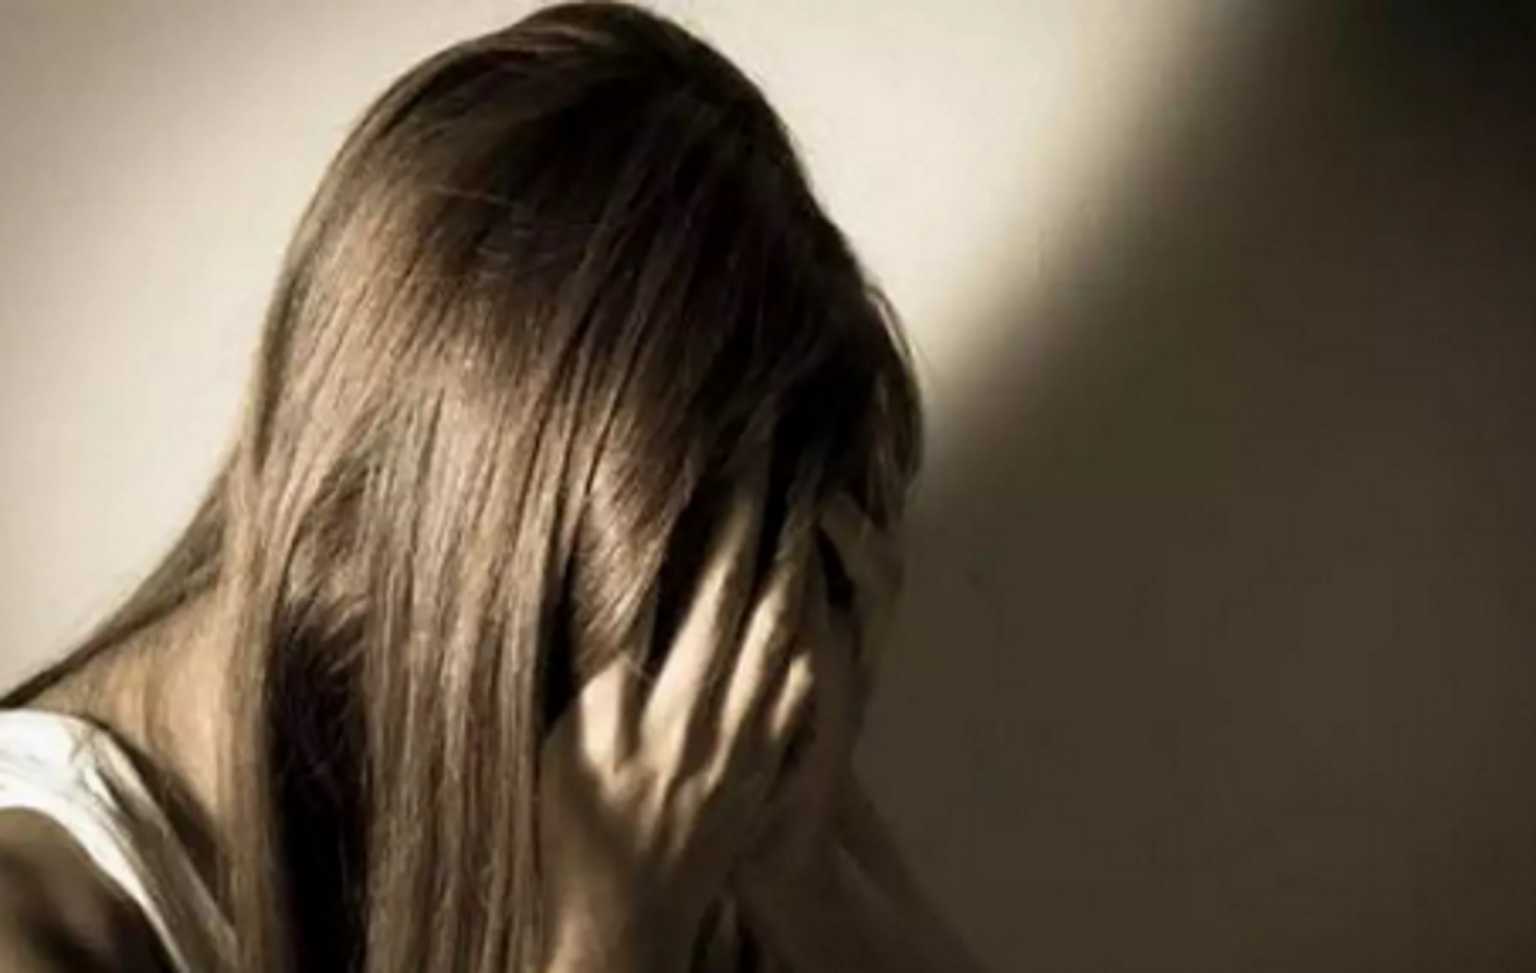 Θύμα κακοποίησης μια 16χρονη από τον 25χρονο σύντροφό της – Τι καταγγέλλει η μητέρα του κοριτσιού